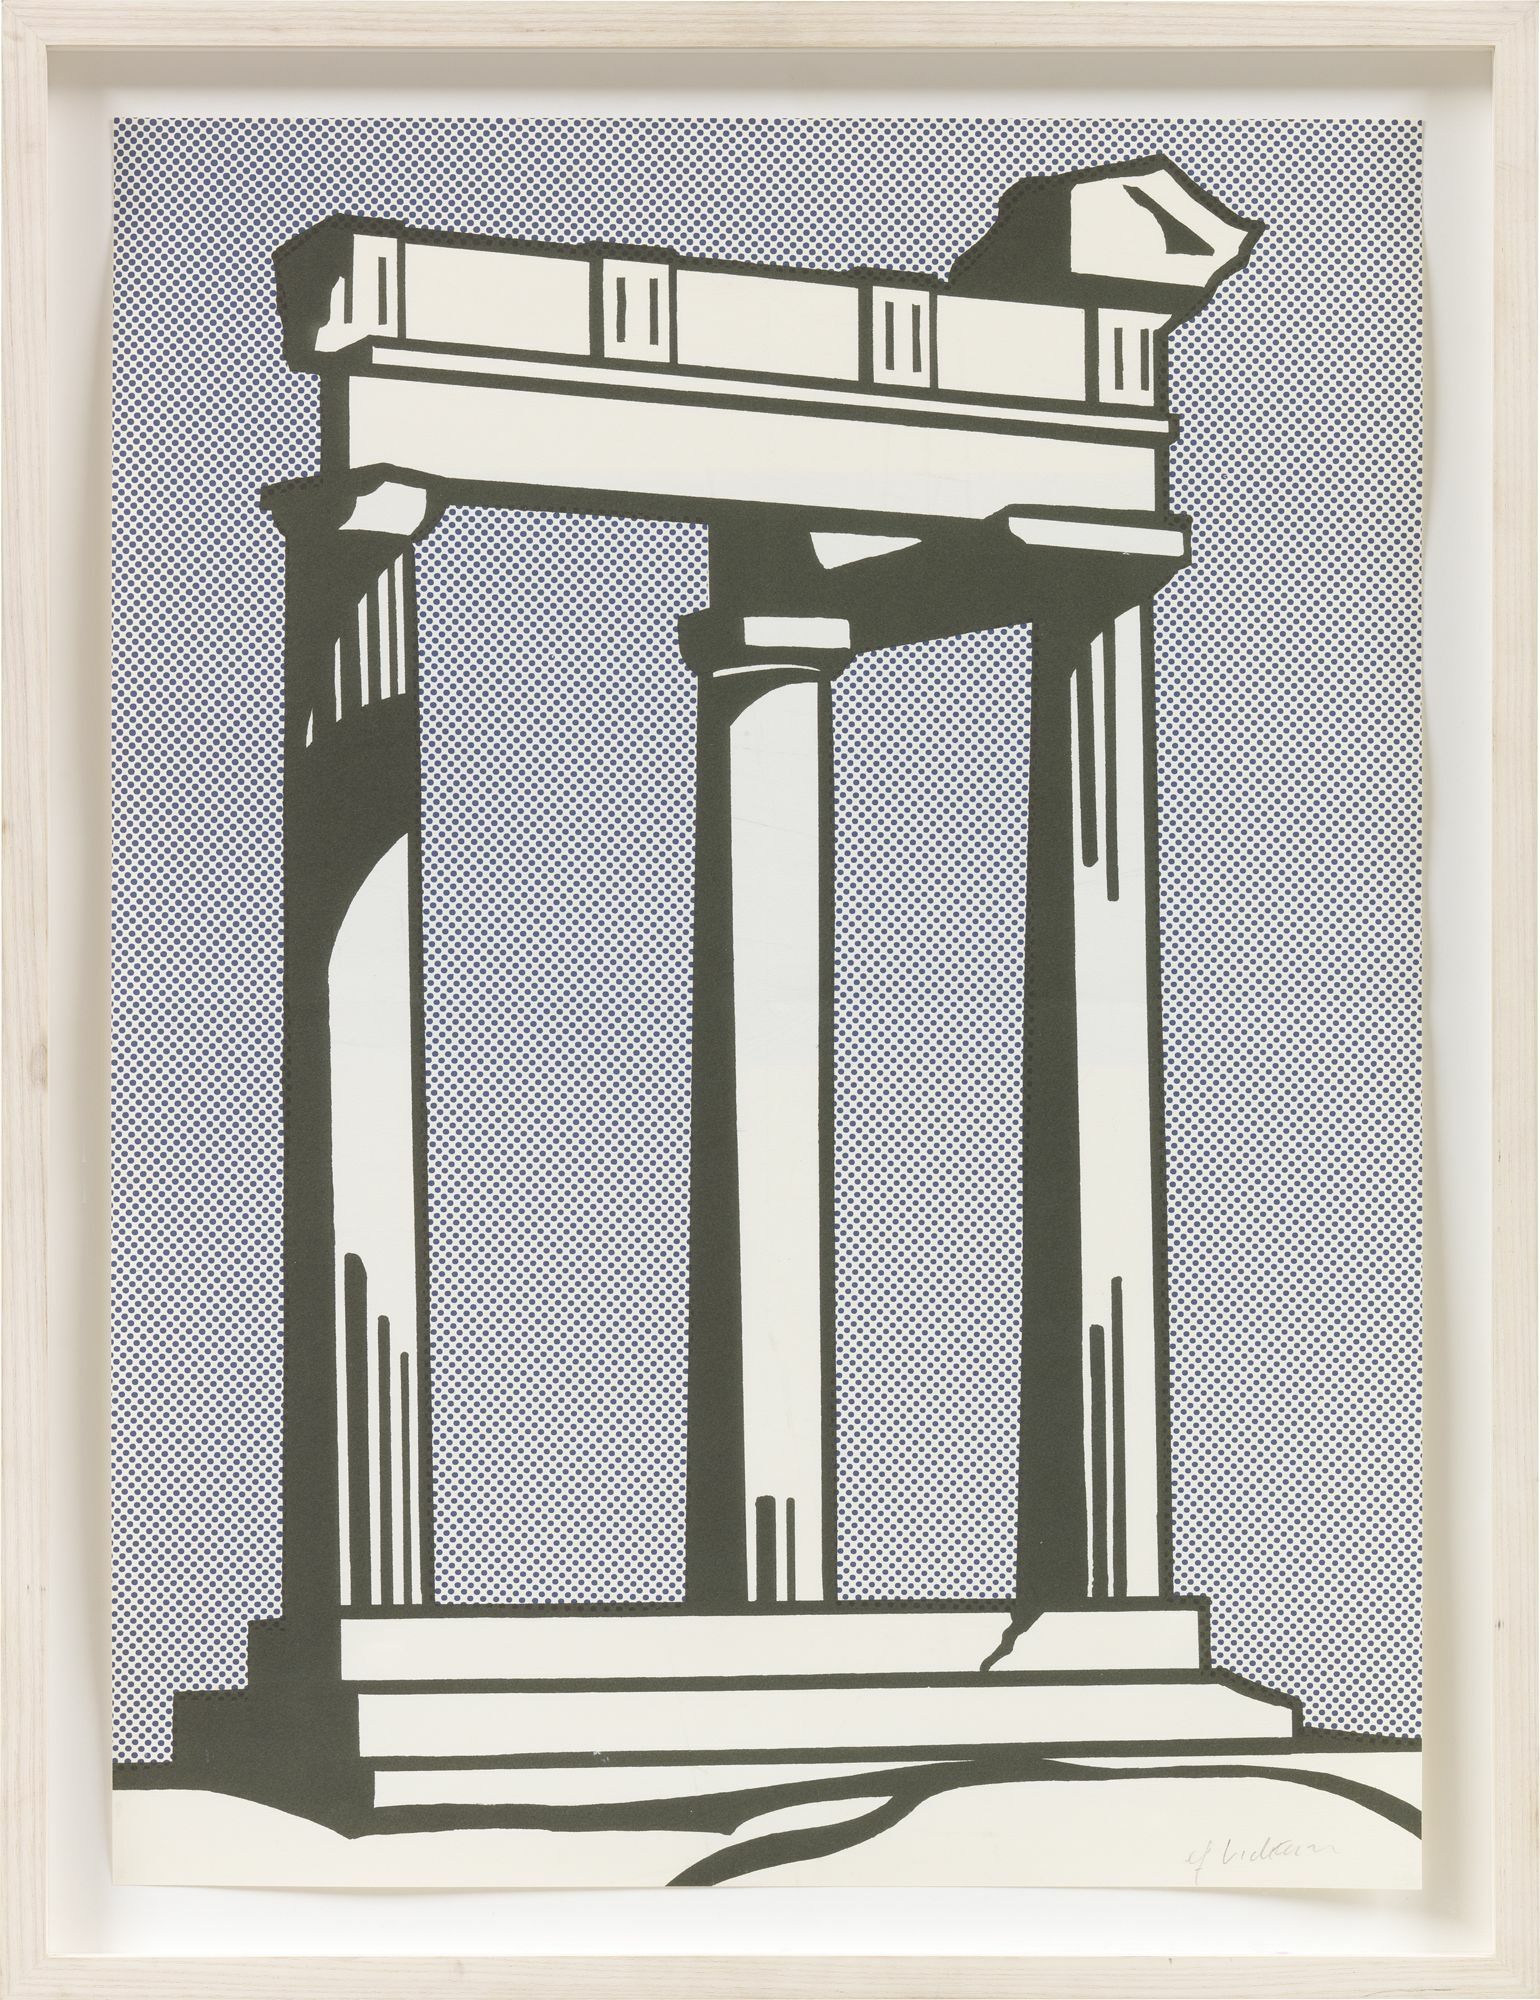 Bild "Temple (Mailer)" (1964) von Roy Lichtenstein